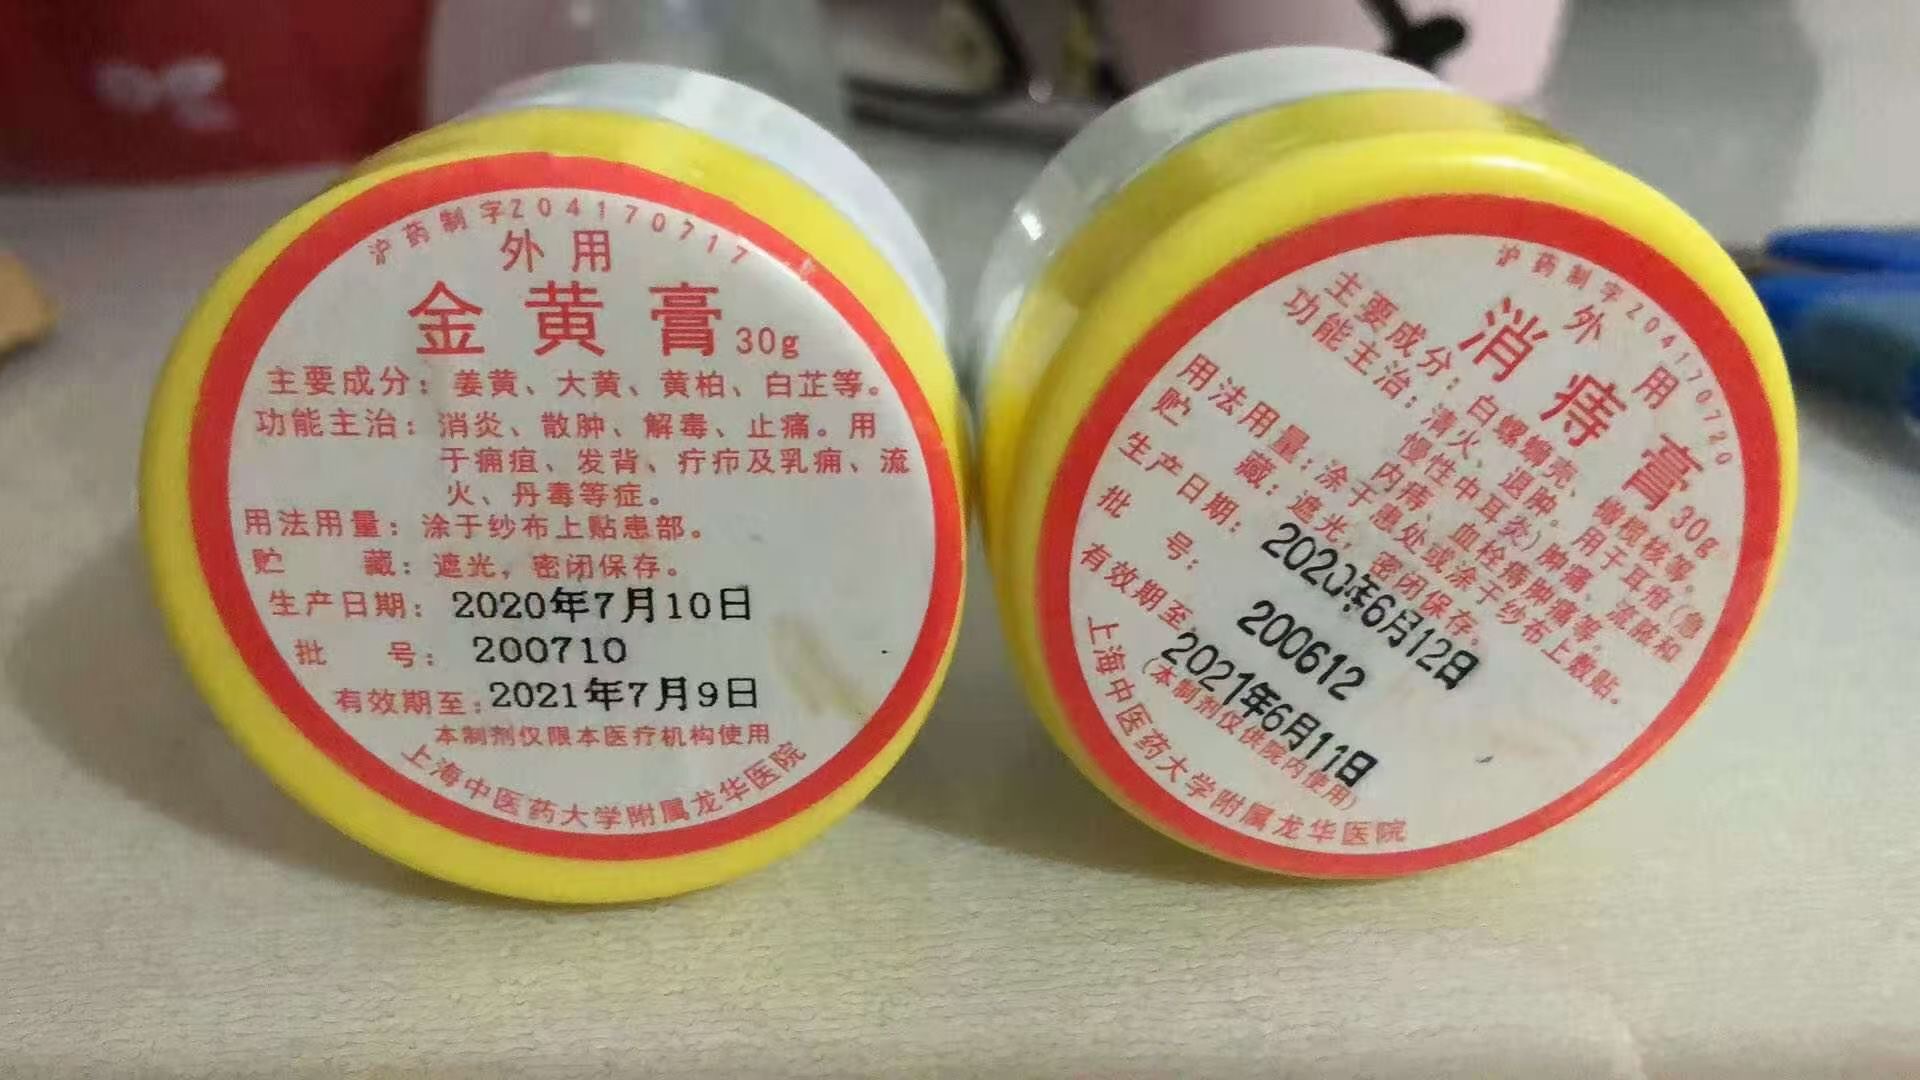 请问 治疗奶结的 黄金膏 或者叫 金黄膏的 上海哪里有卖啊